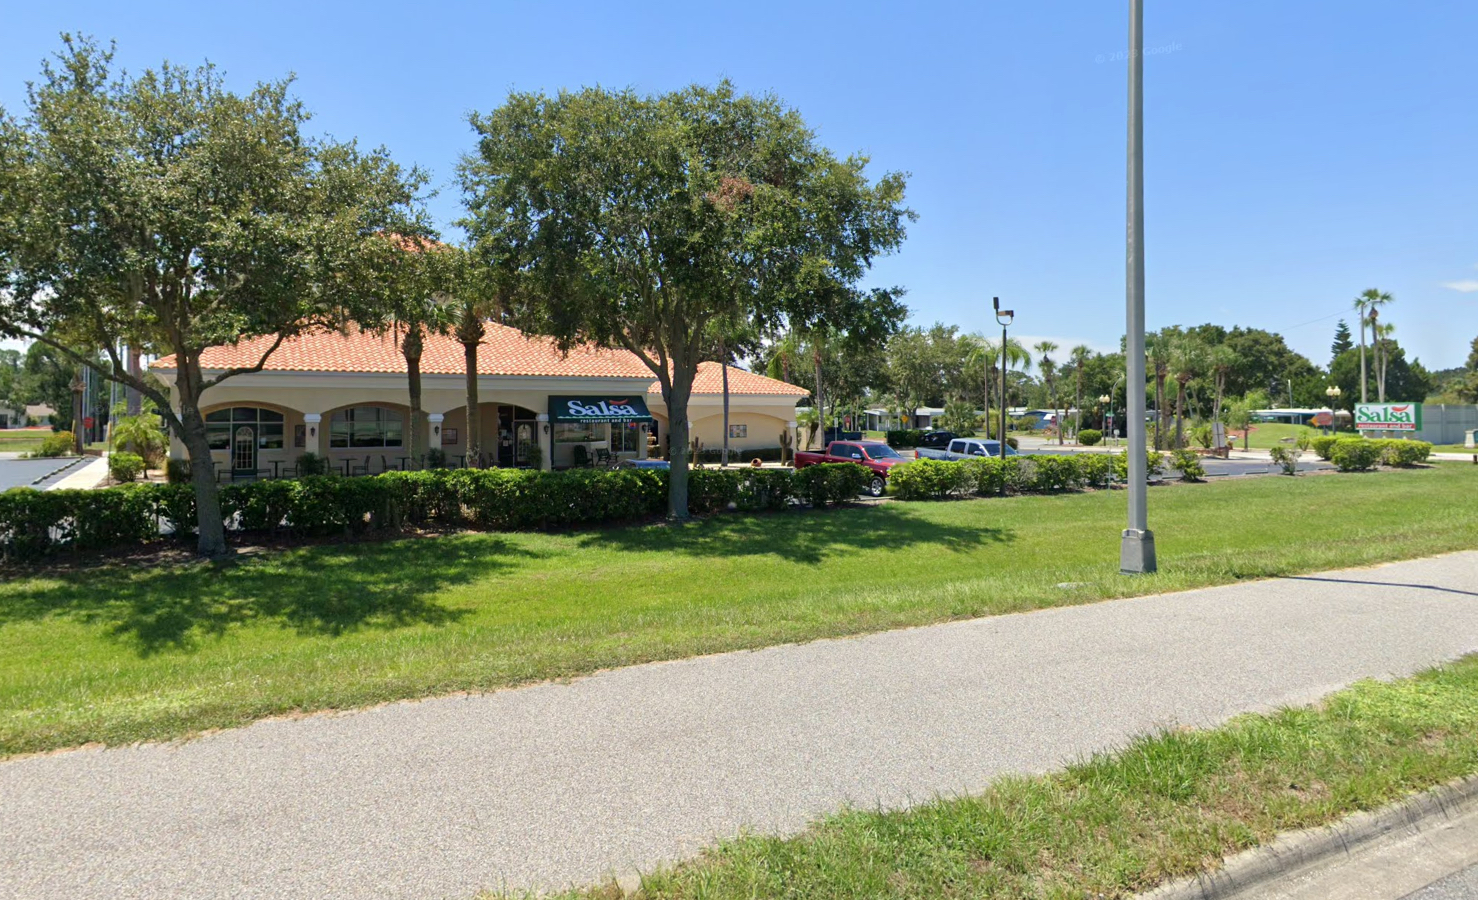 Salsa Restaurant - Tavares, FL